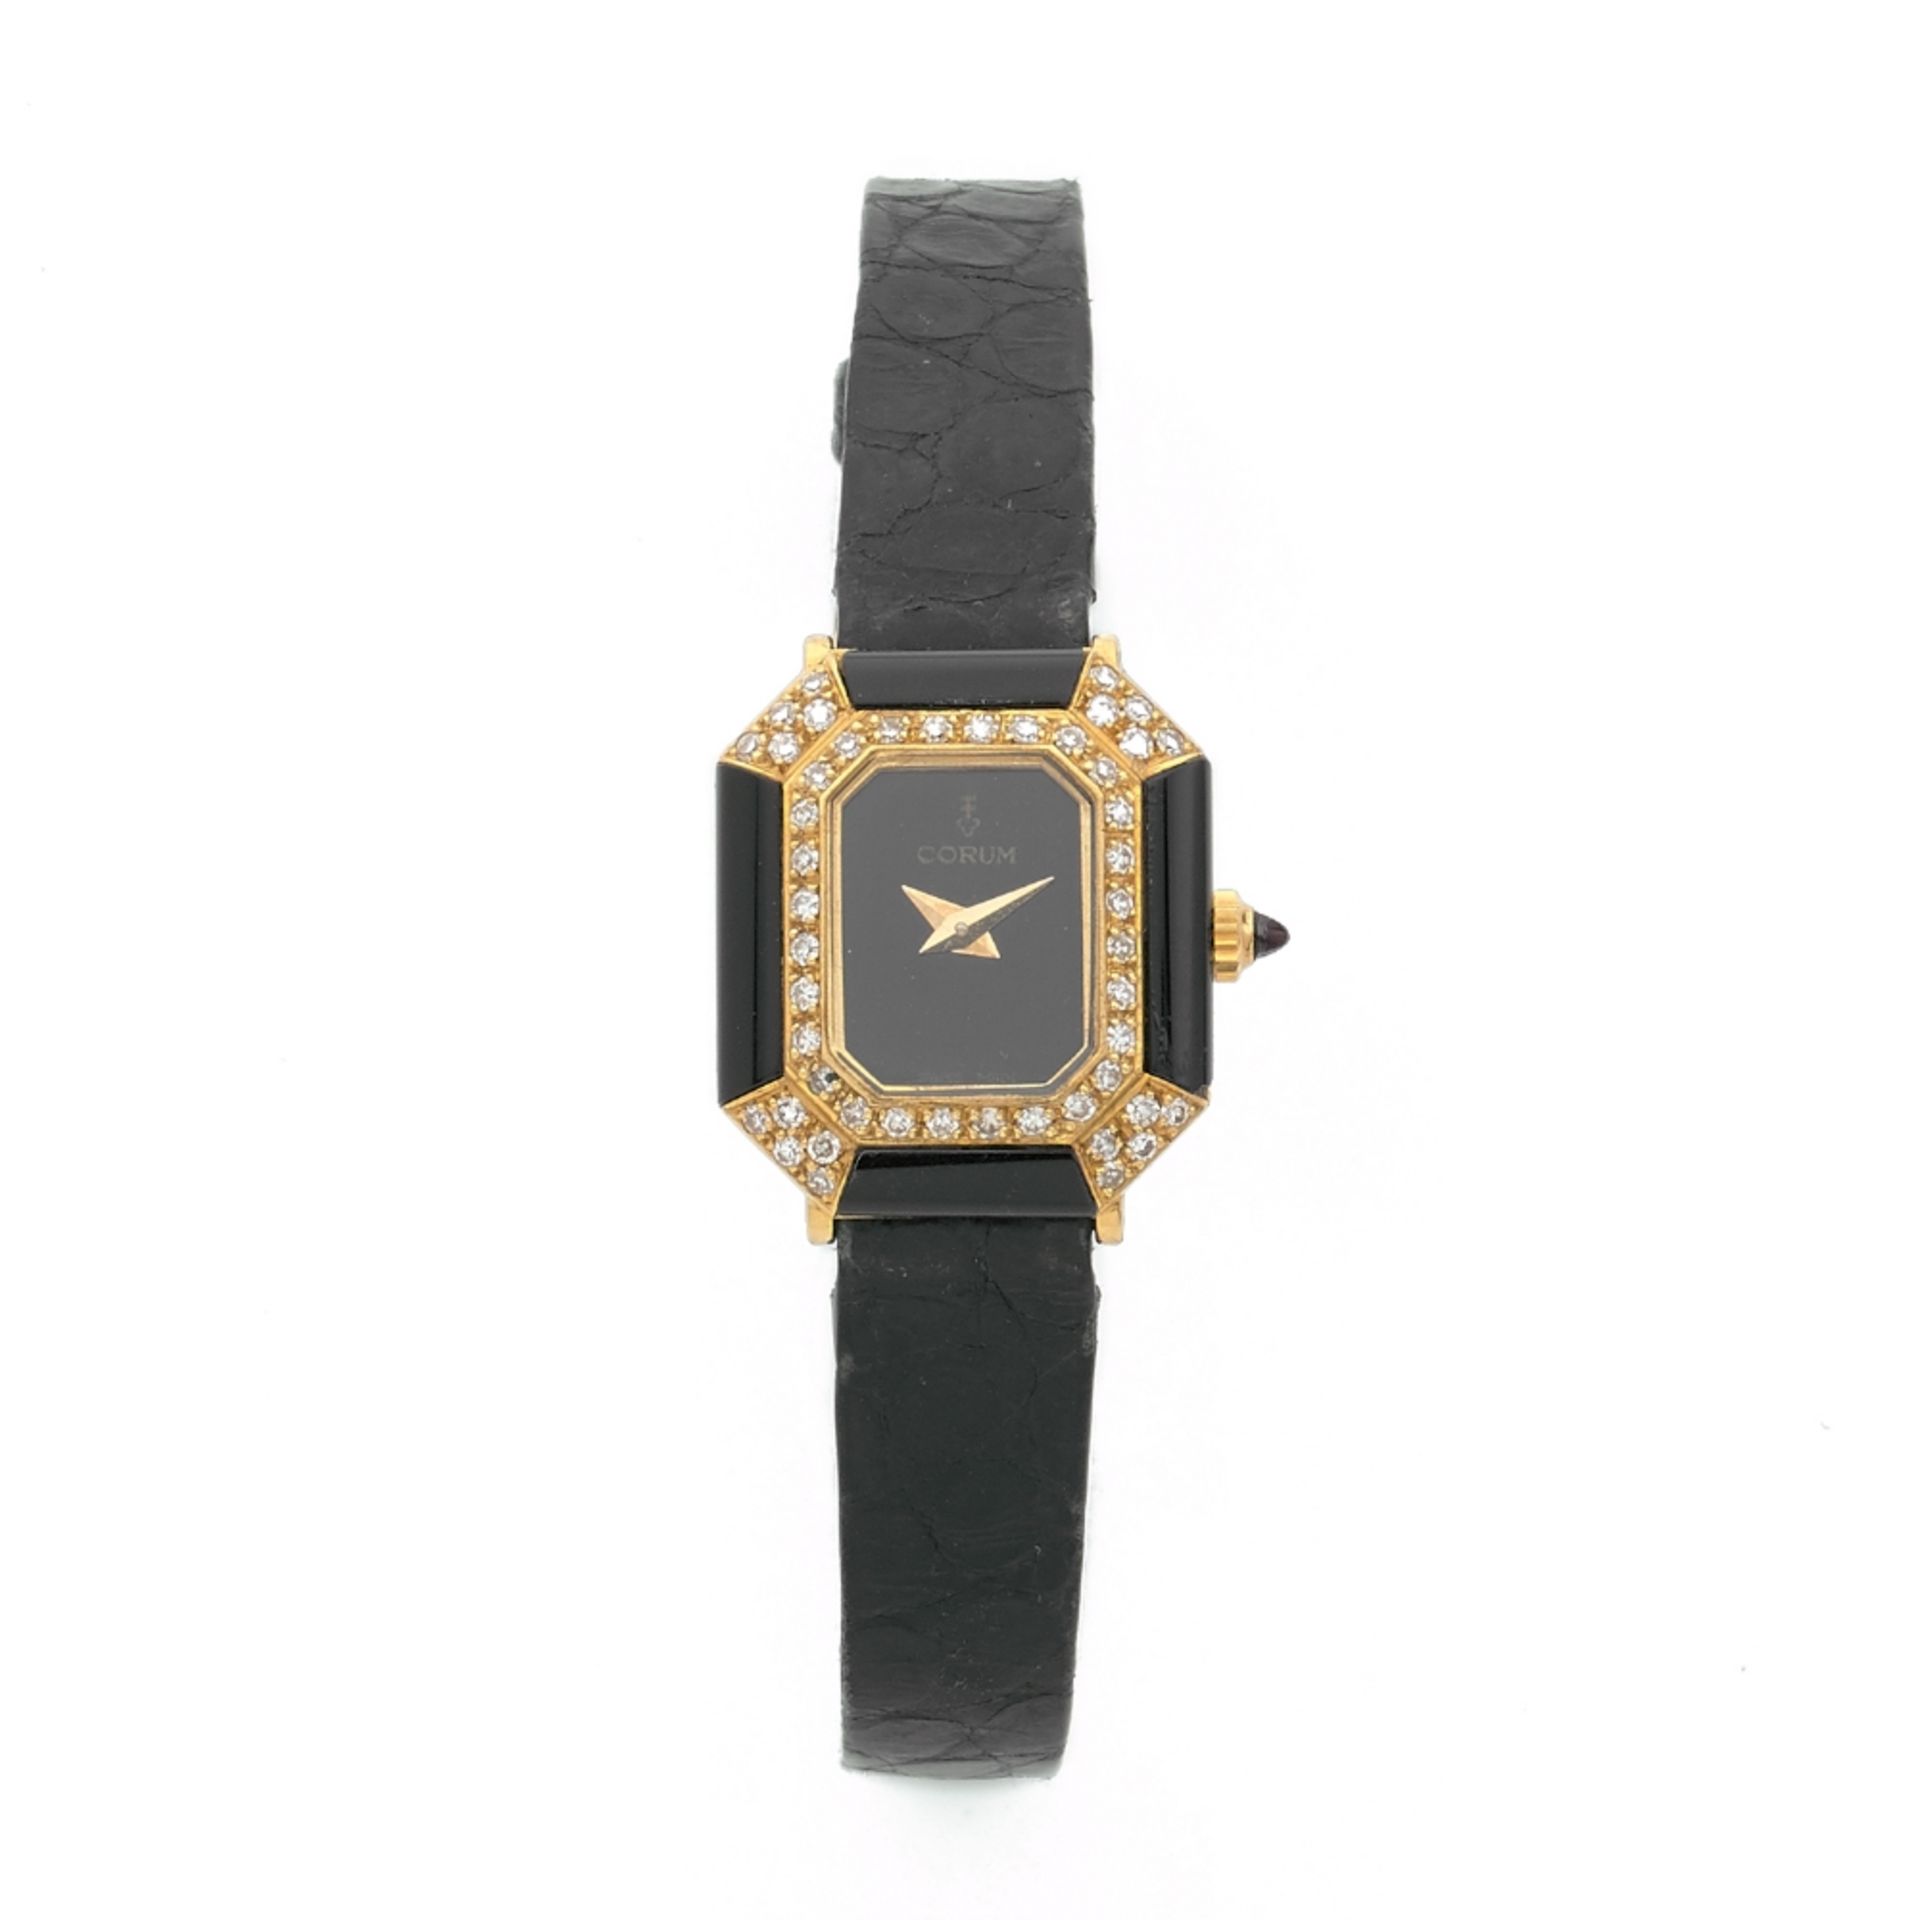 CORUM Petite montre bracelet de dame en or jaune 18K, onyx et diamants sur cuir. BOITIER :